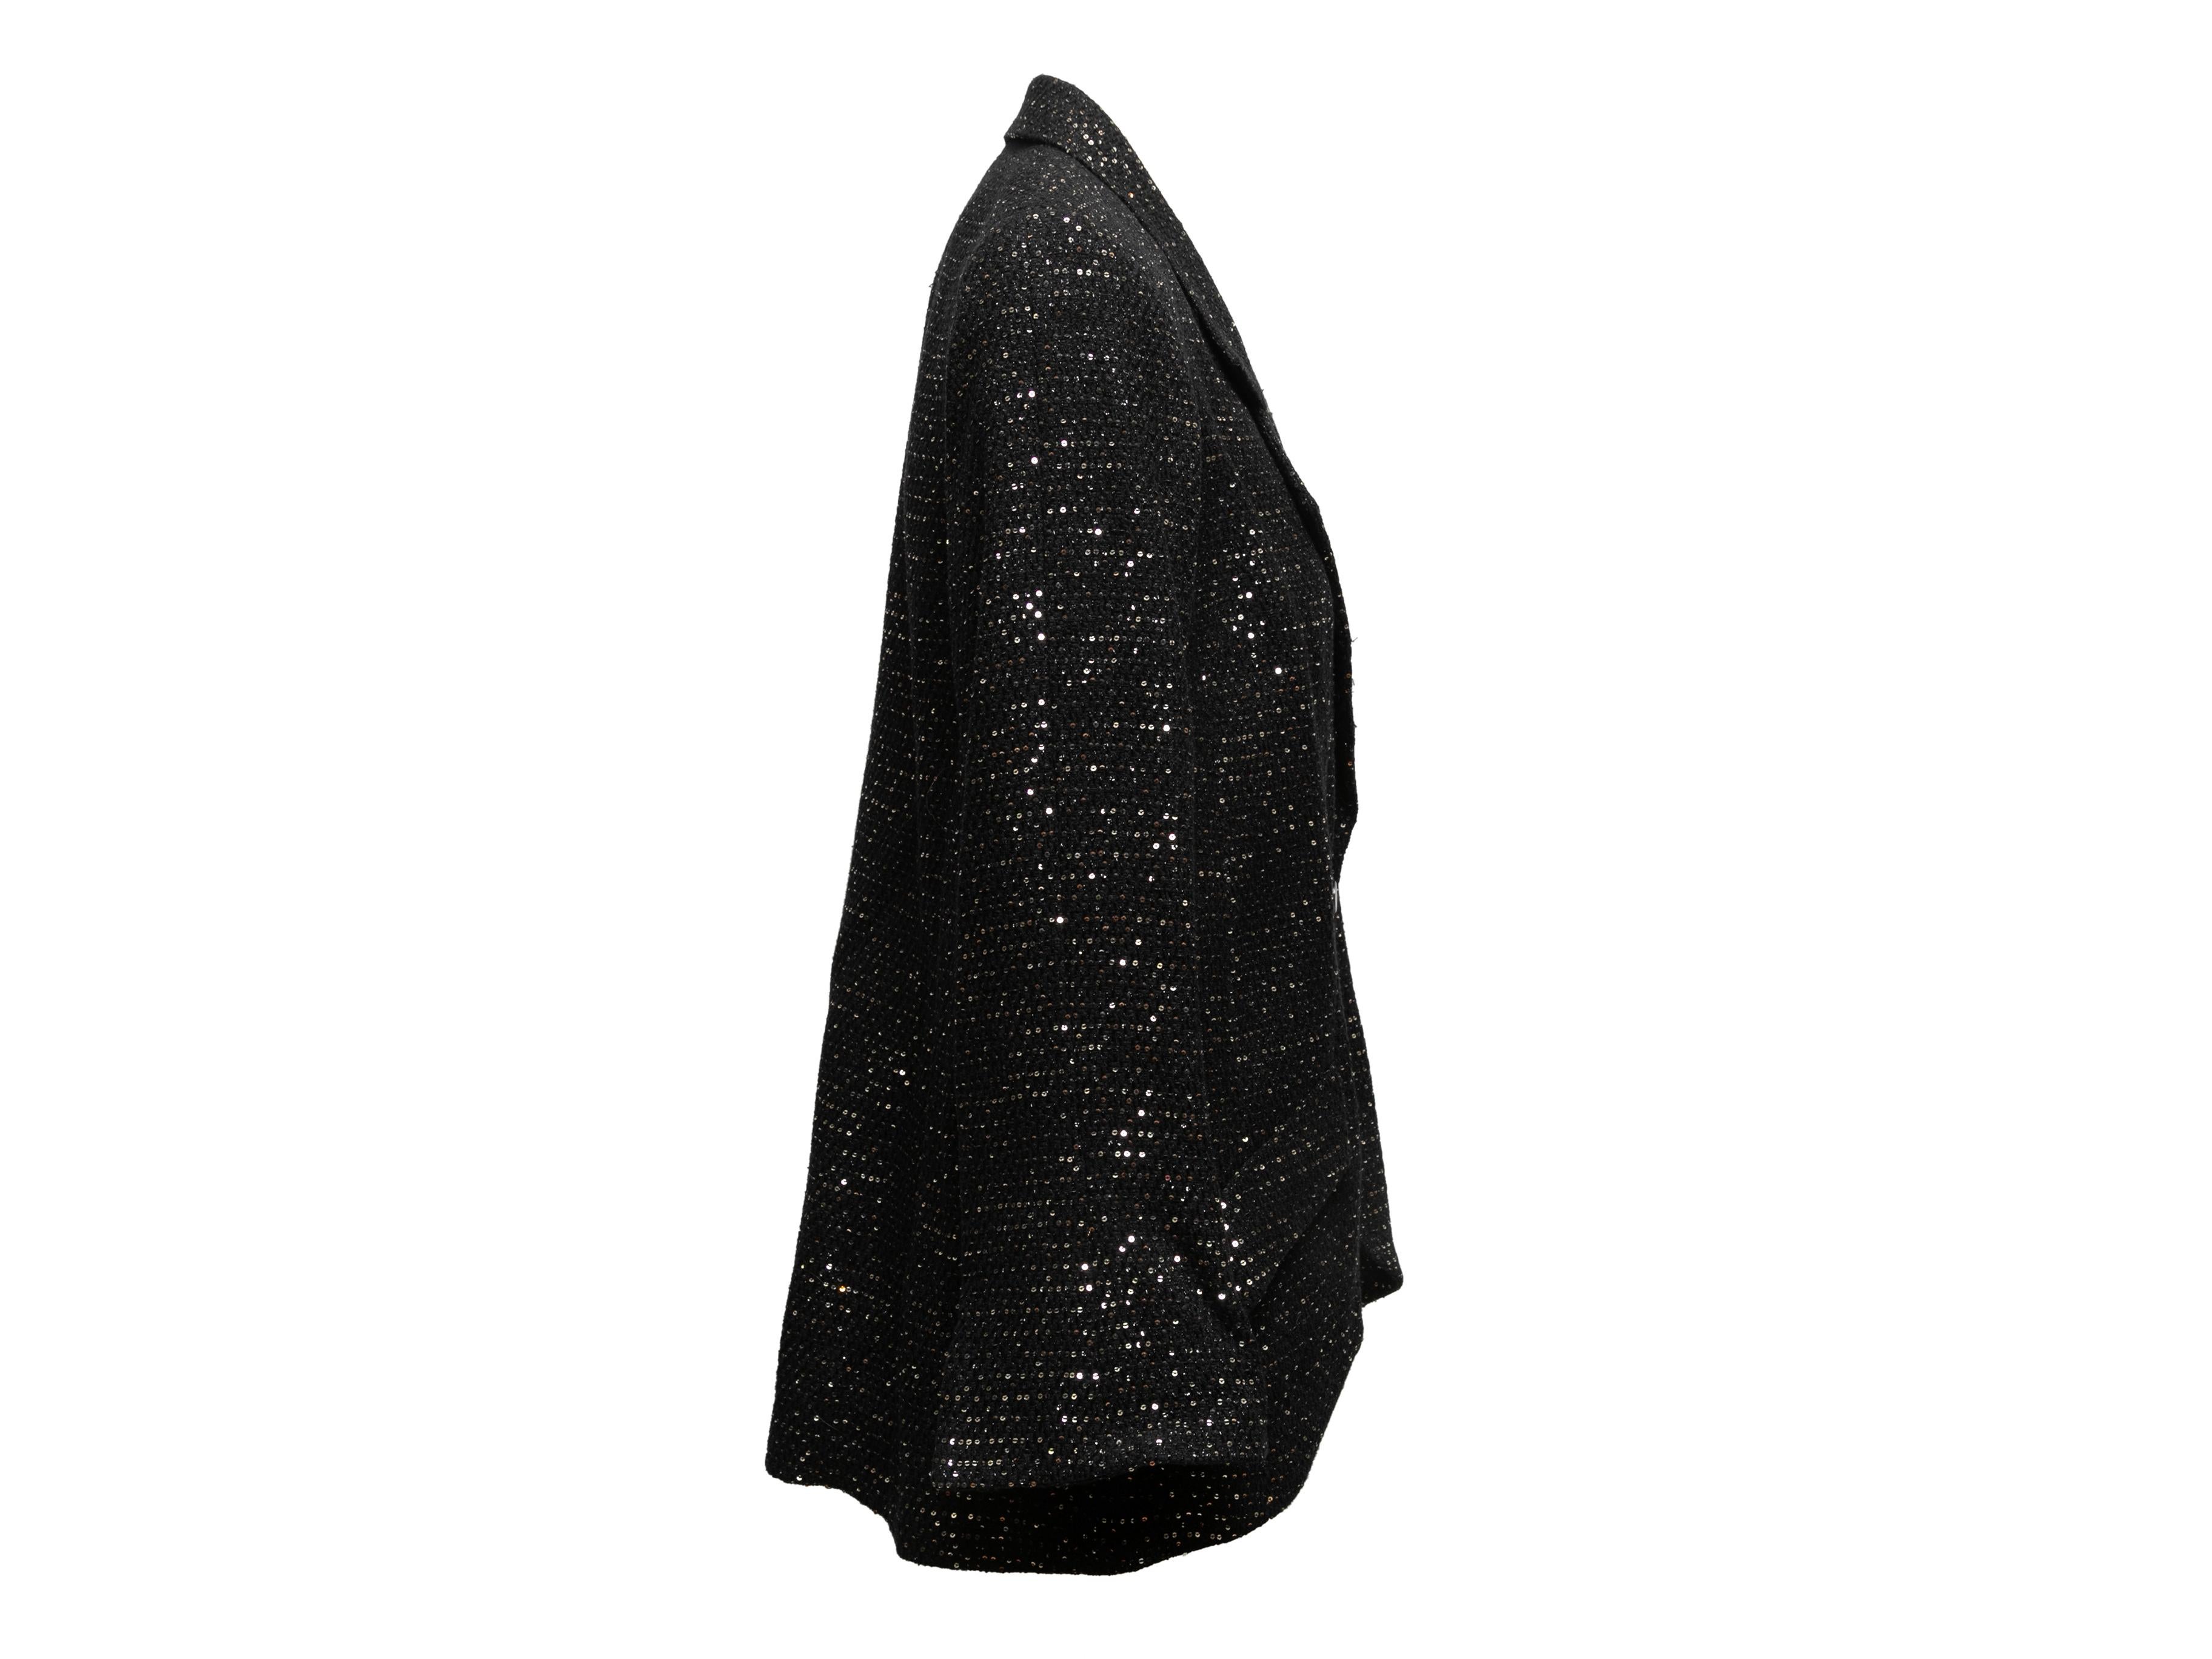  Blazer en tweed pailleté noir et argenté de Chanel. De la collection Cruis 2011 St. Tropez. Revers cranté. Double hanche. Fermeture par bouton sur le devant. Poitrine 40